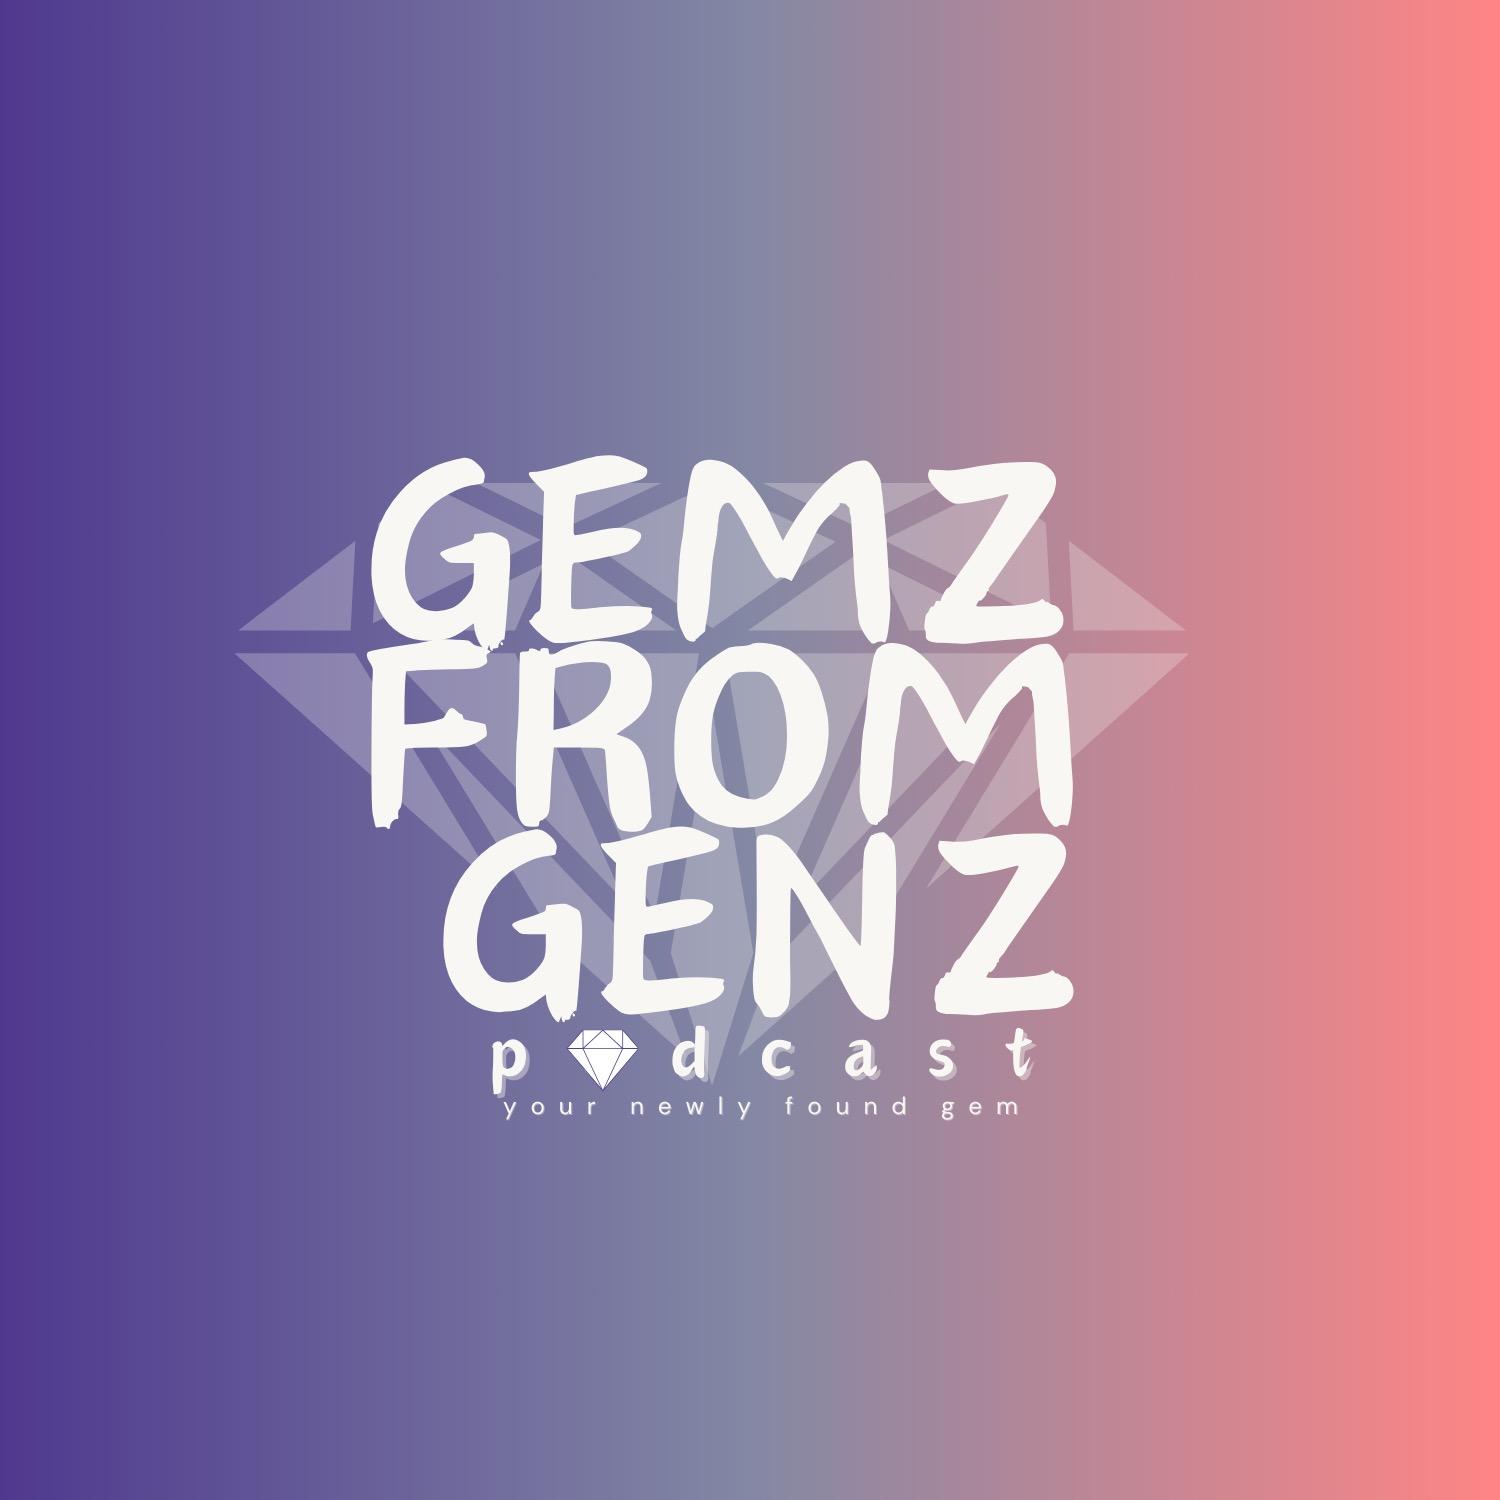 GemZ from GenZ